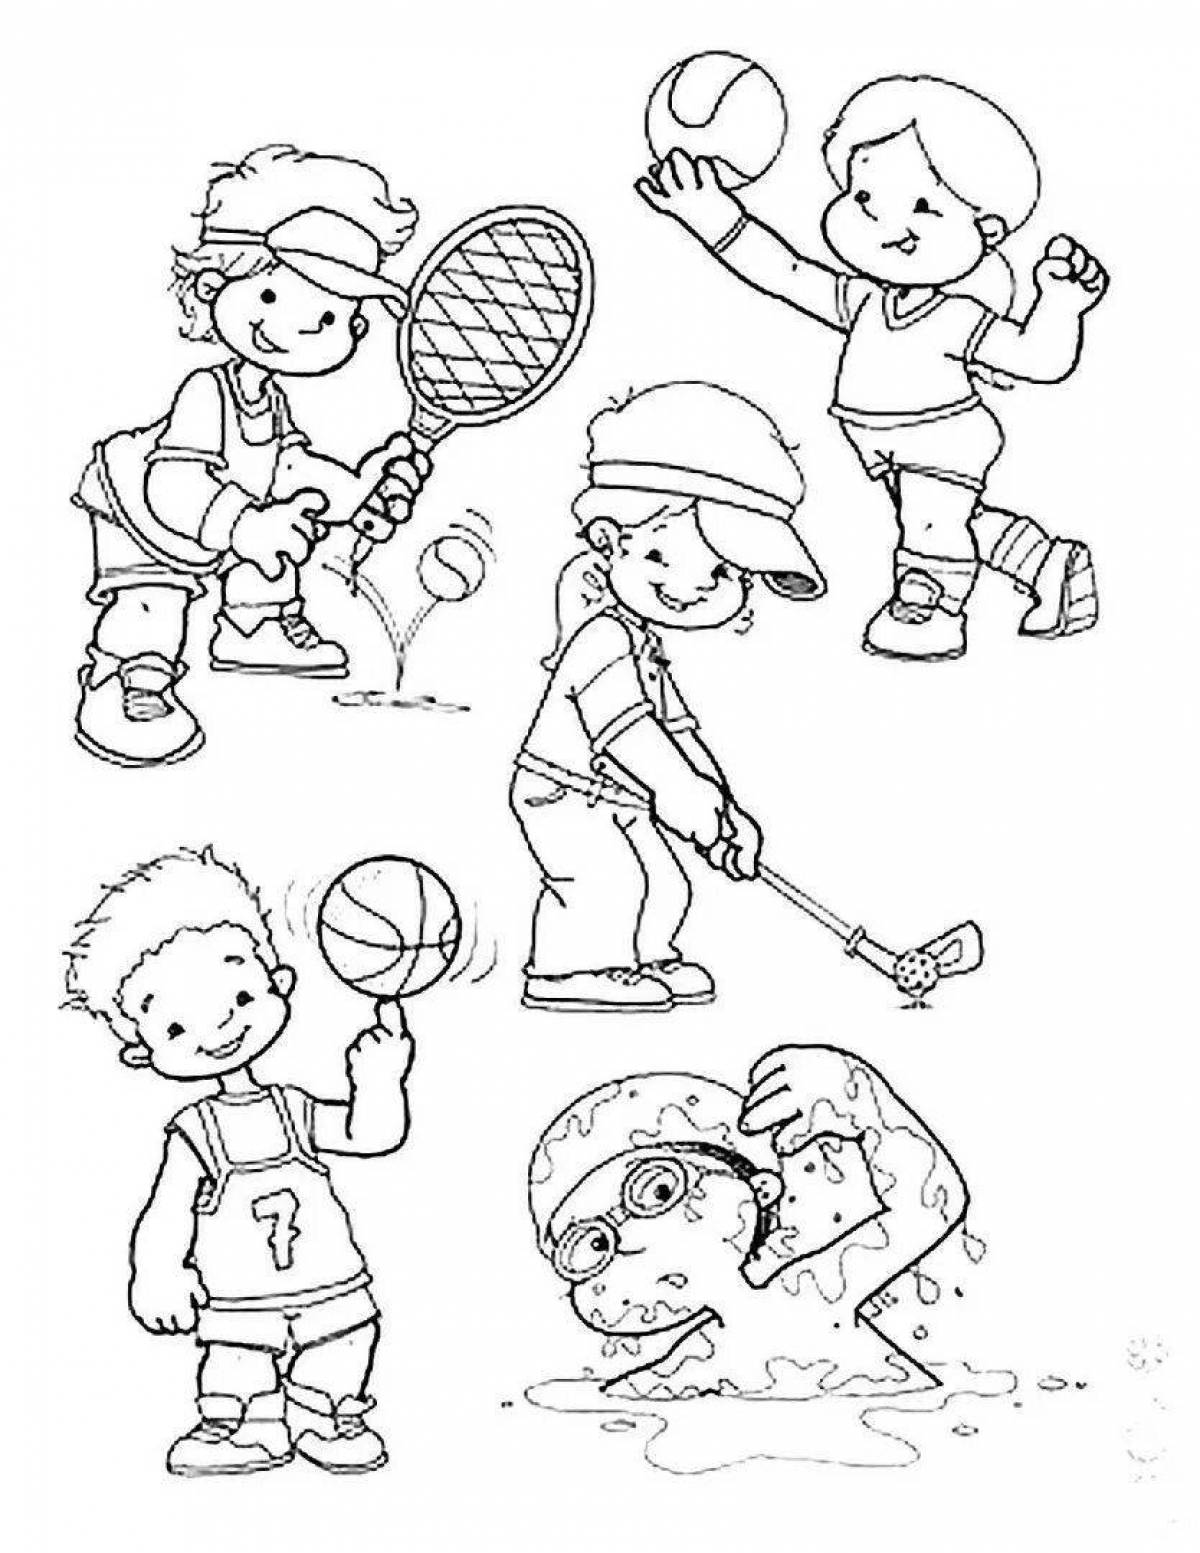 Распечатать картинки-раскраски про спорт для детей